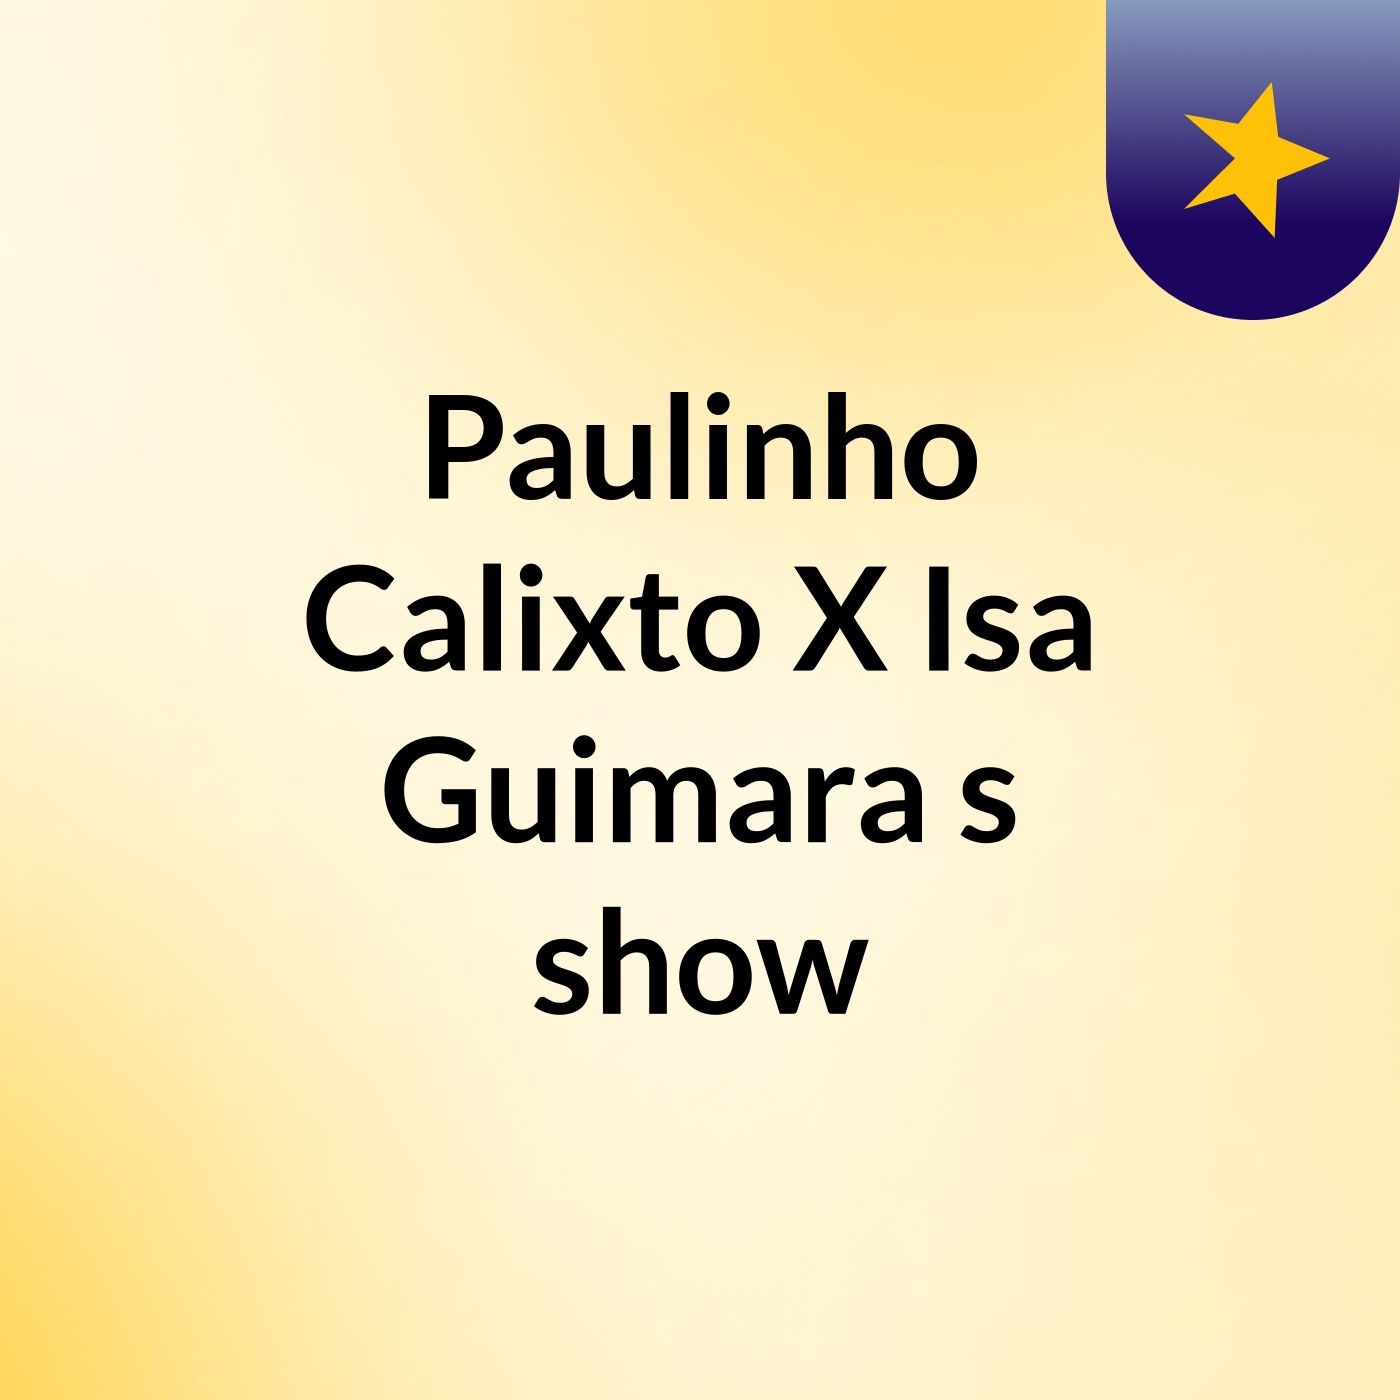 Paulinho Calixto X Isa Guimara's show